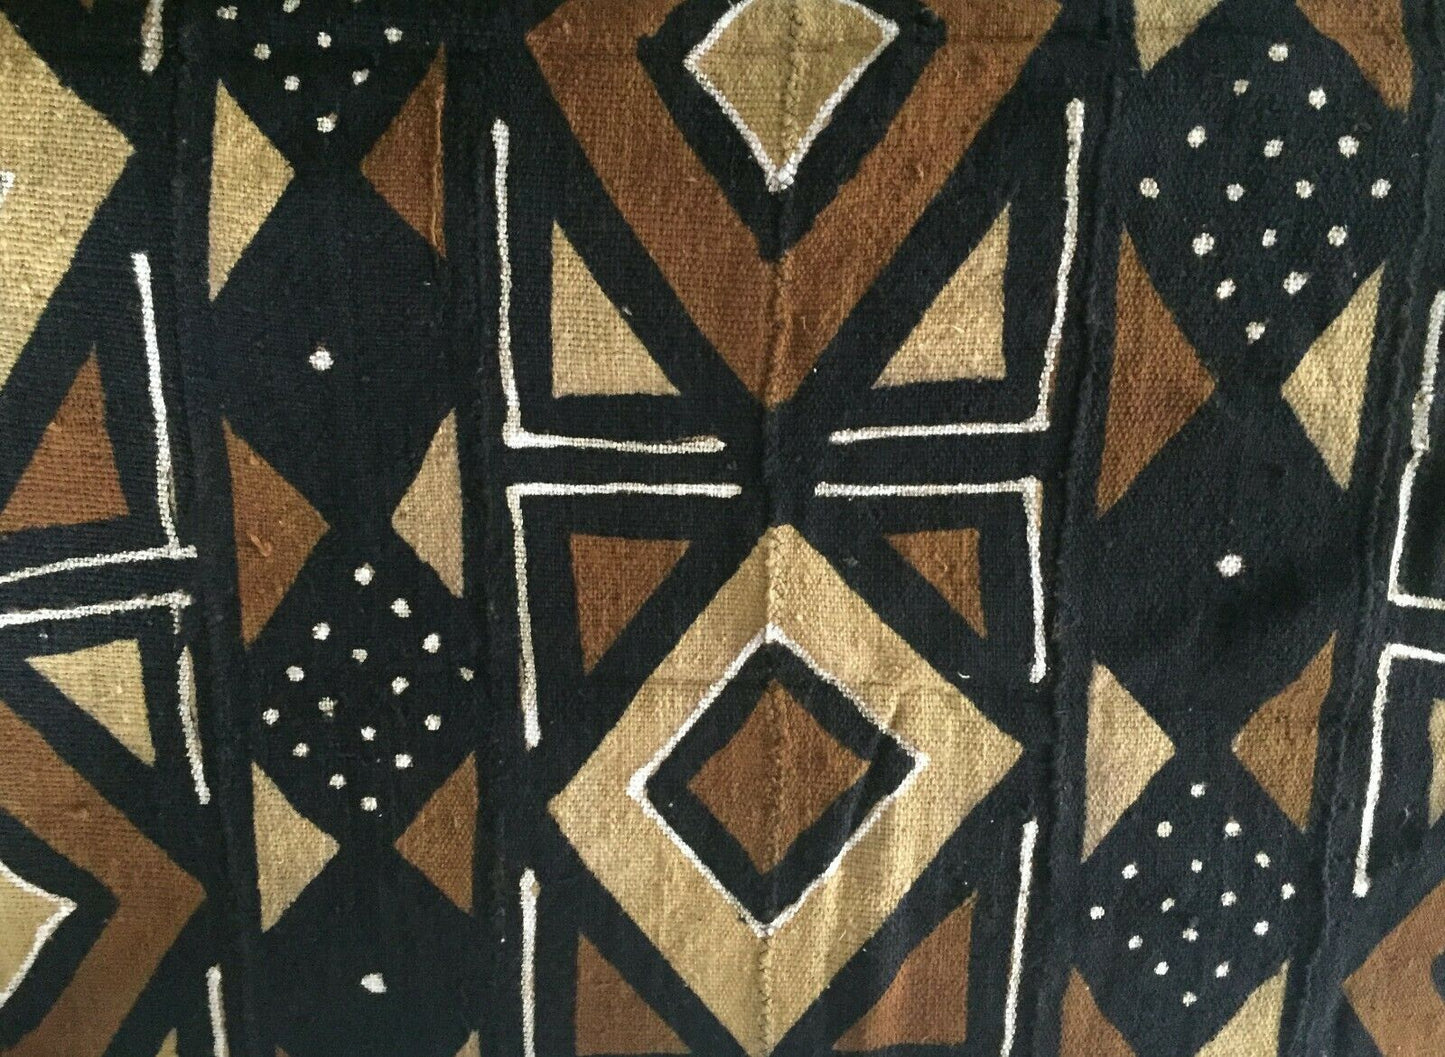 Superb Bogolan Mali Mud Cloth Textile 40" by 60" #1980